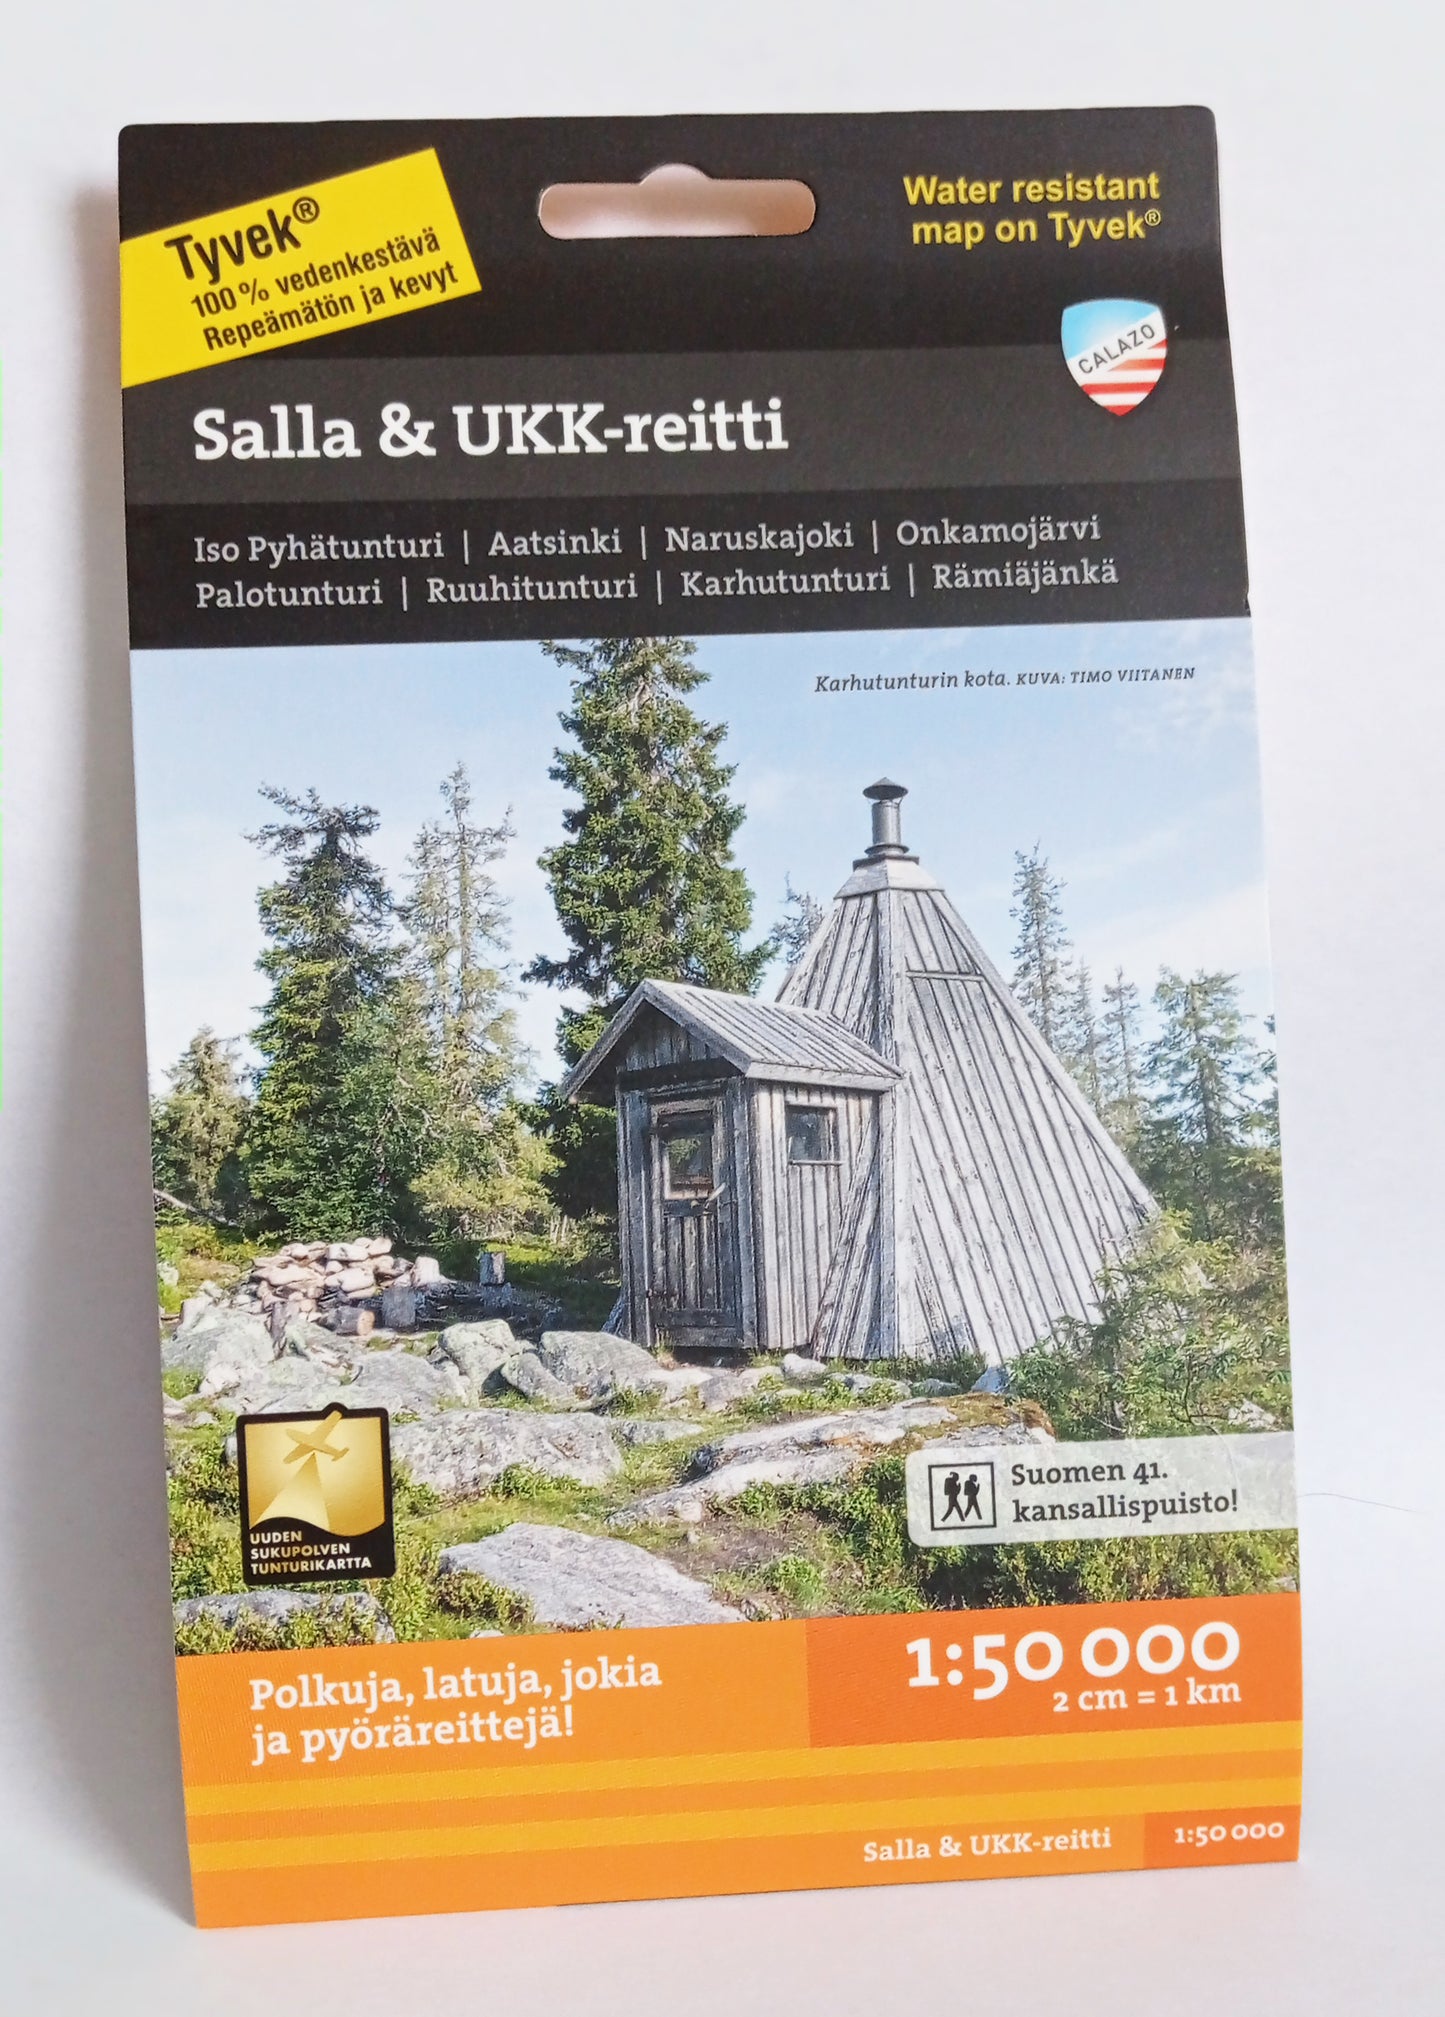 Salla & UKK-reitti 1:50 000 kartta